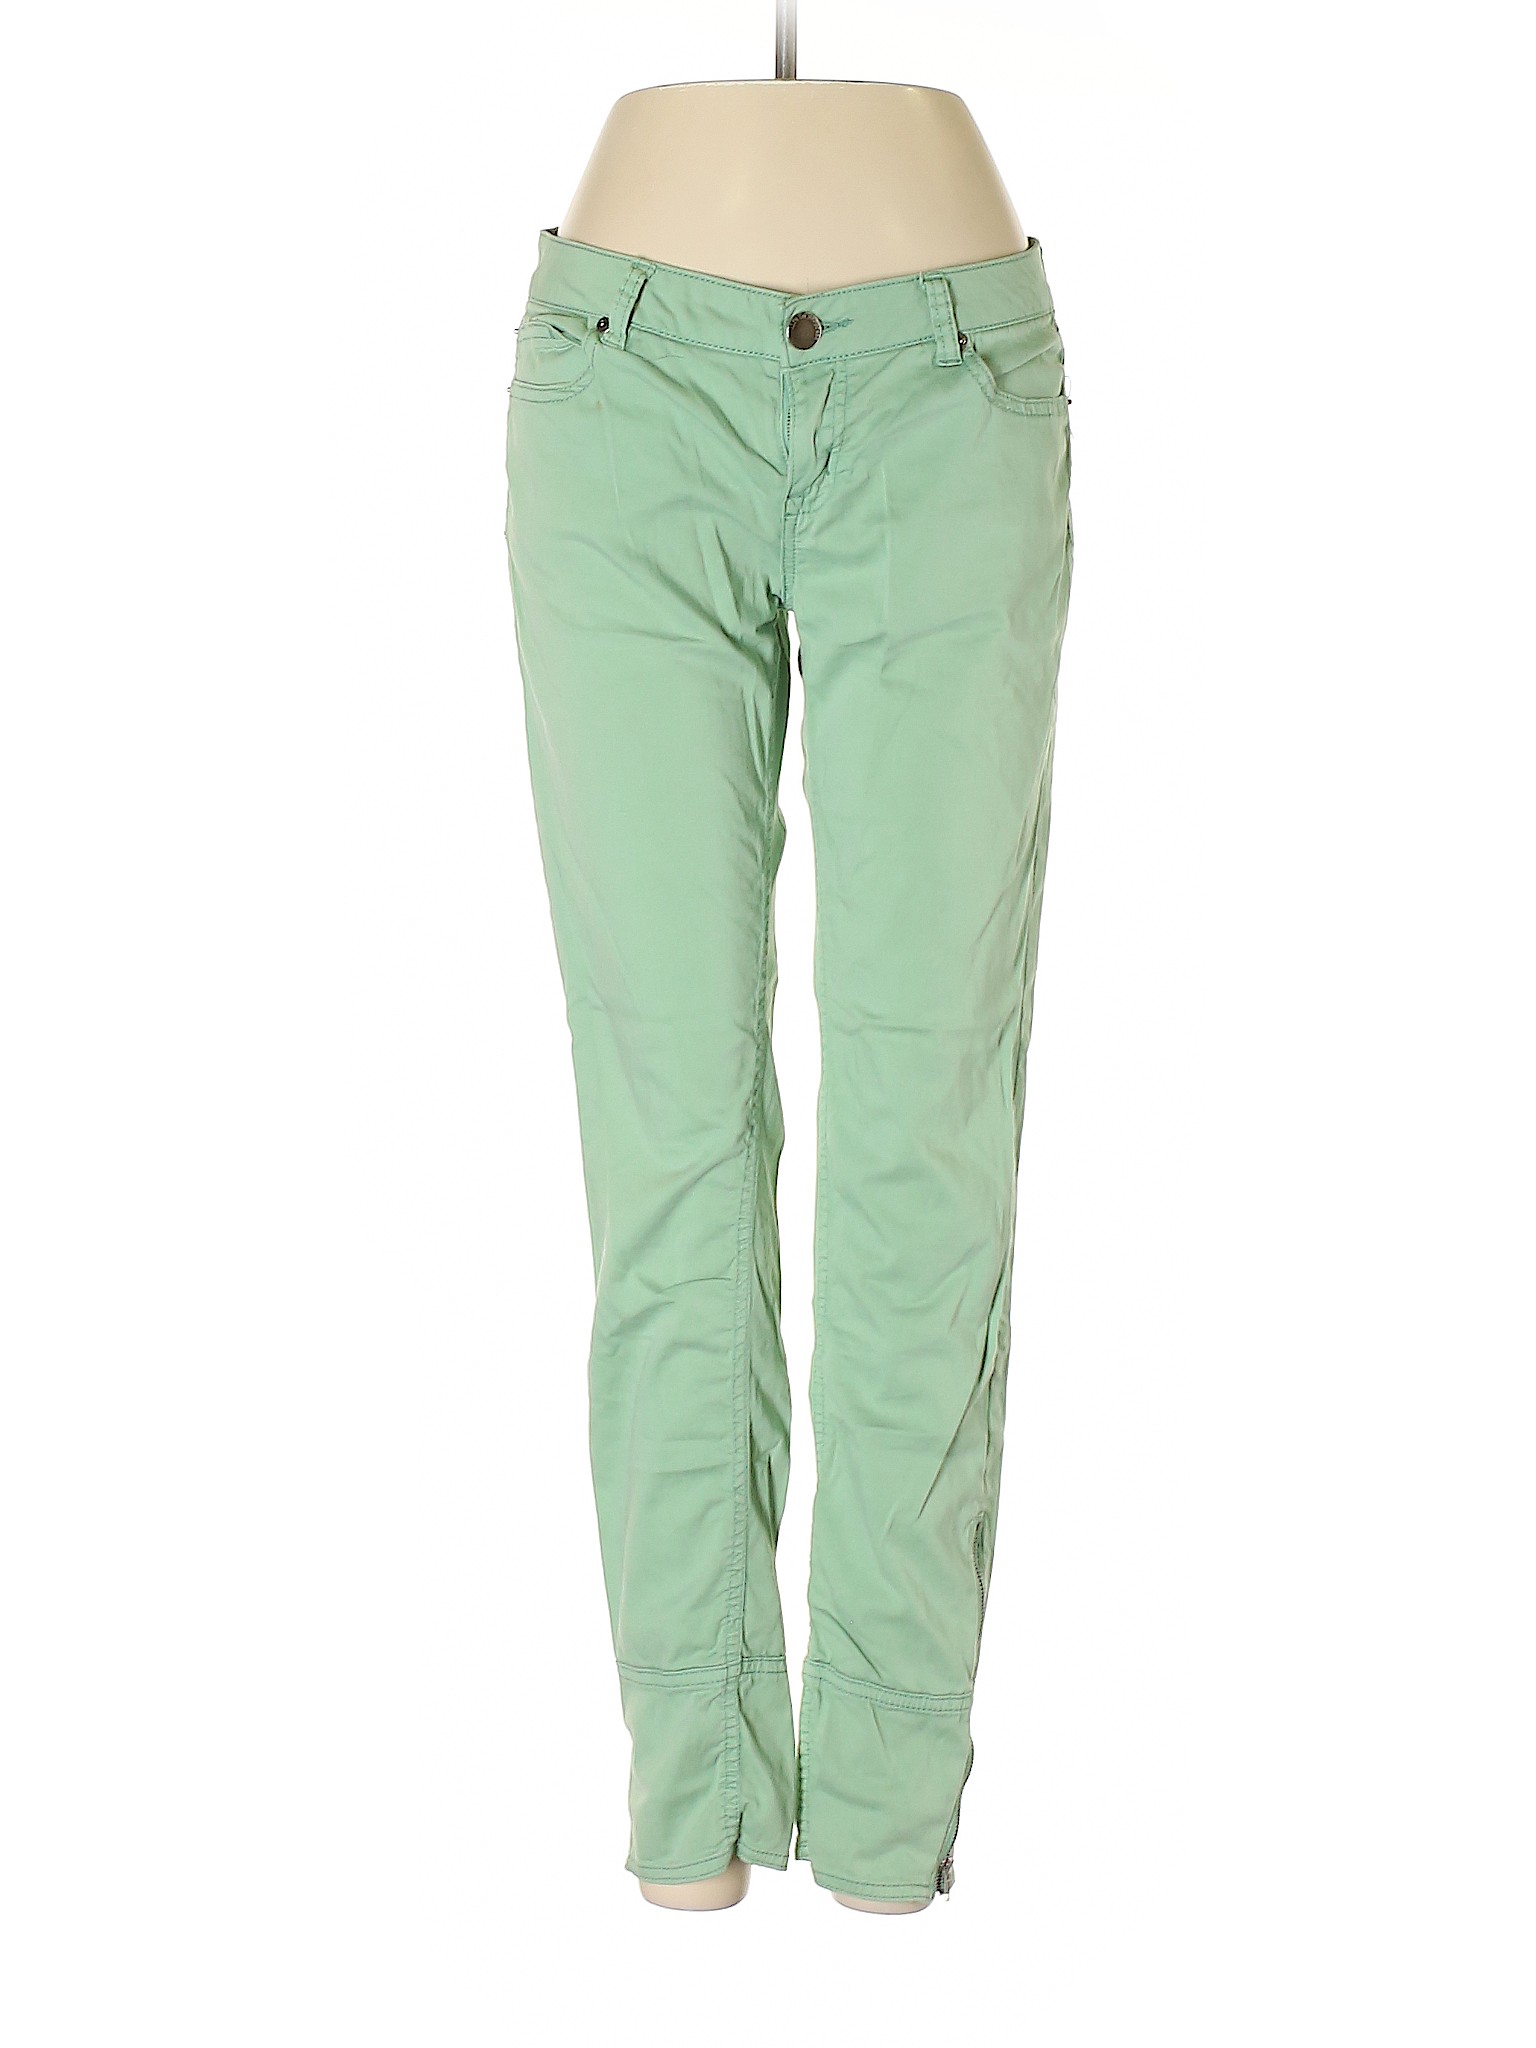 Life in Progress Women Green Jeans 27W | eBay